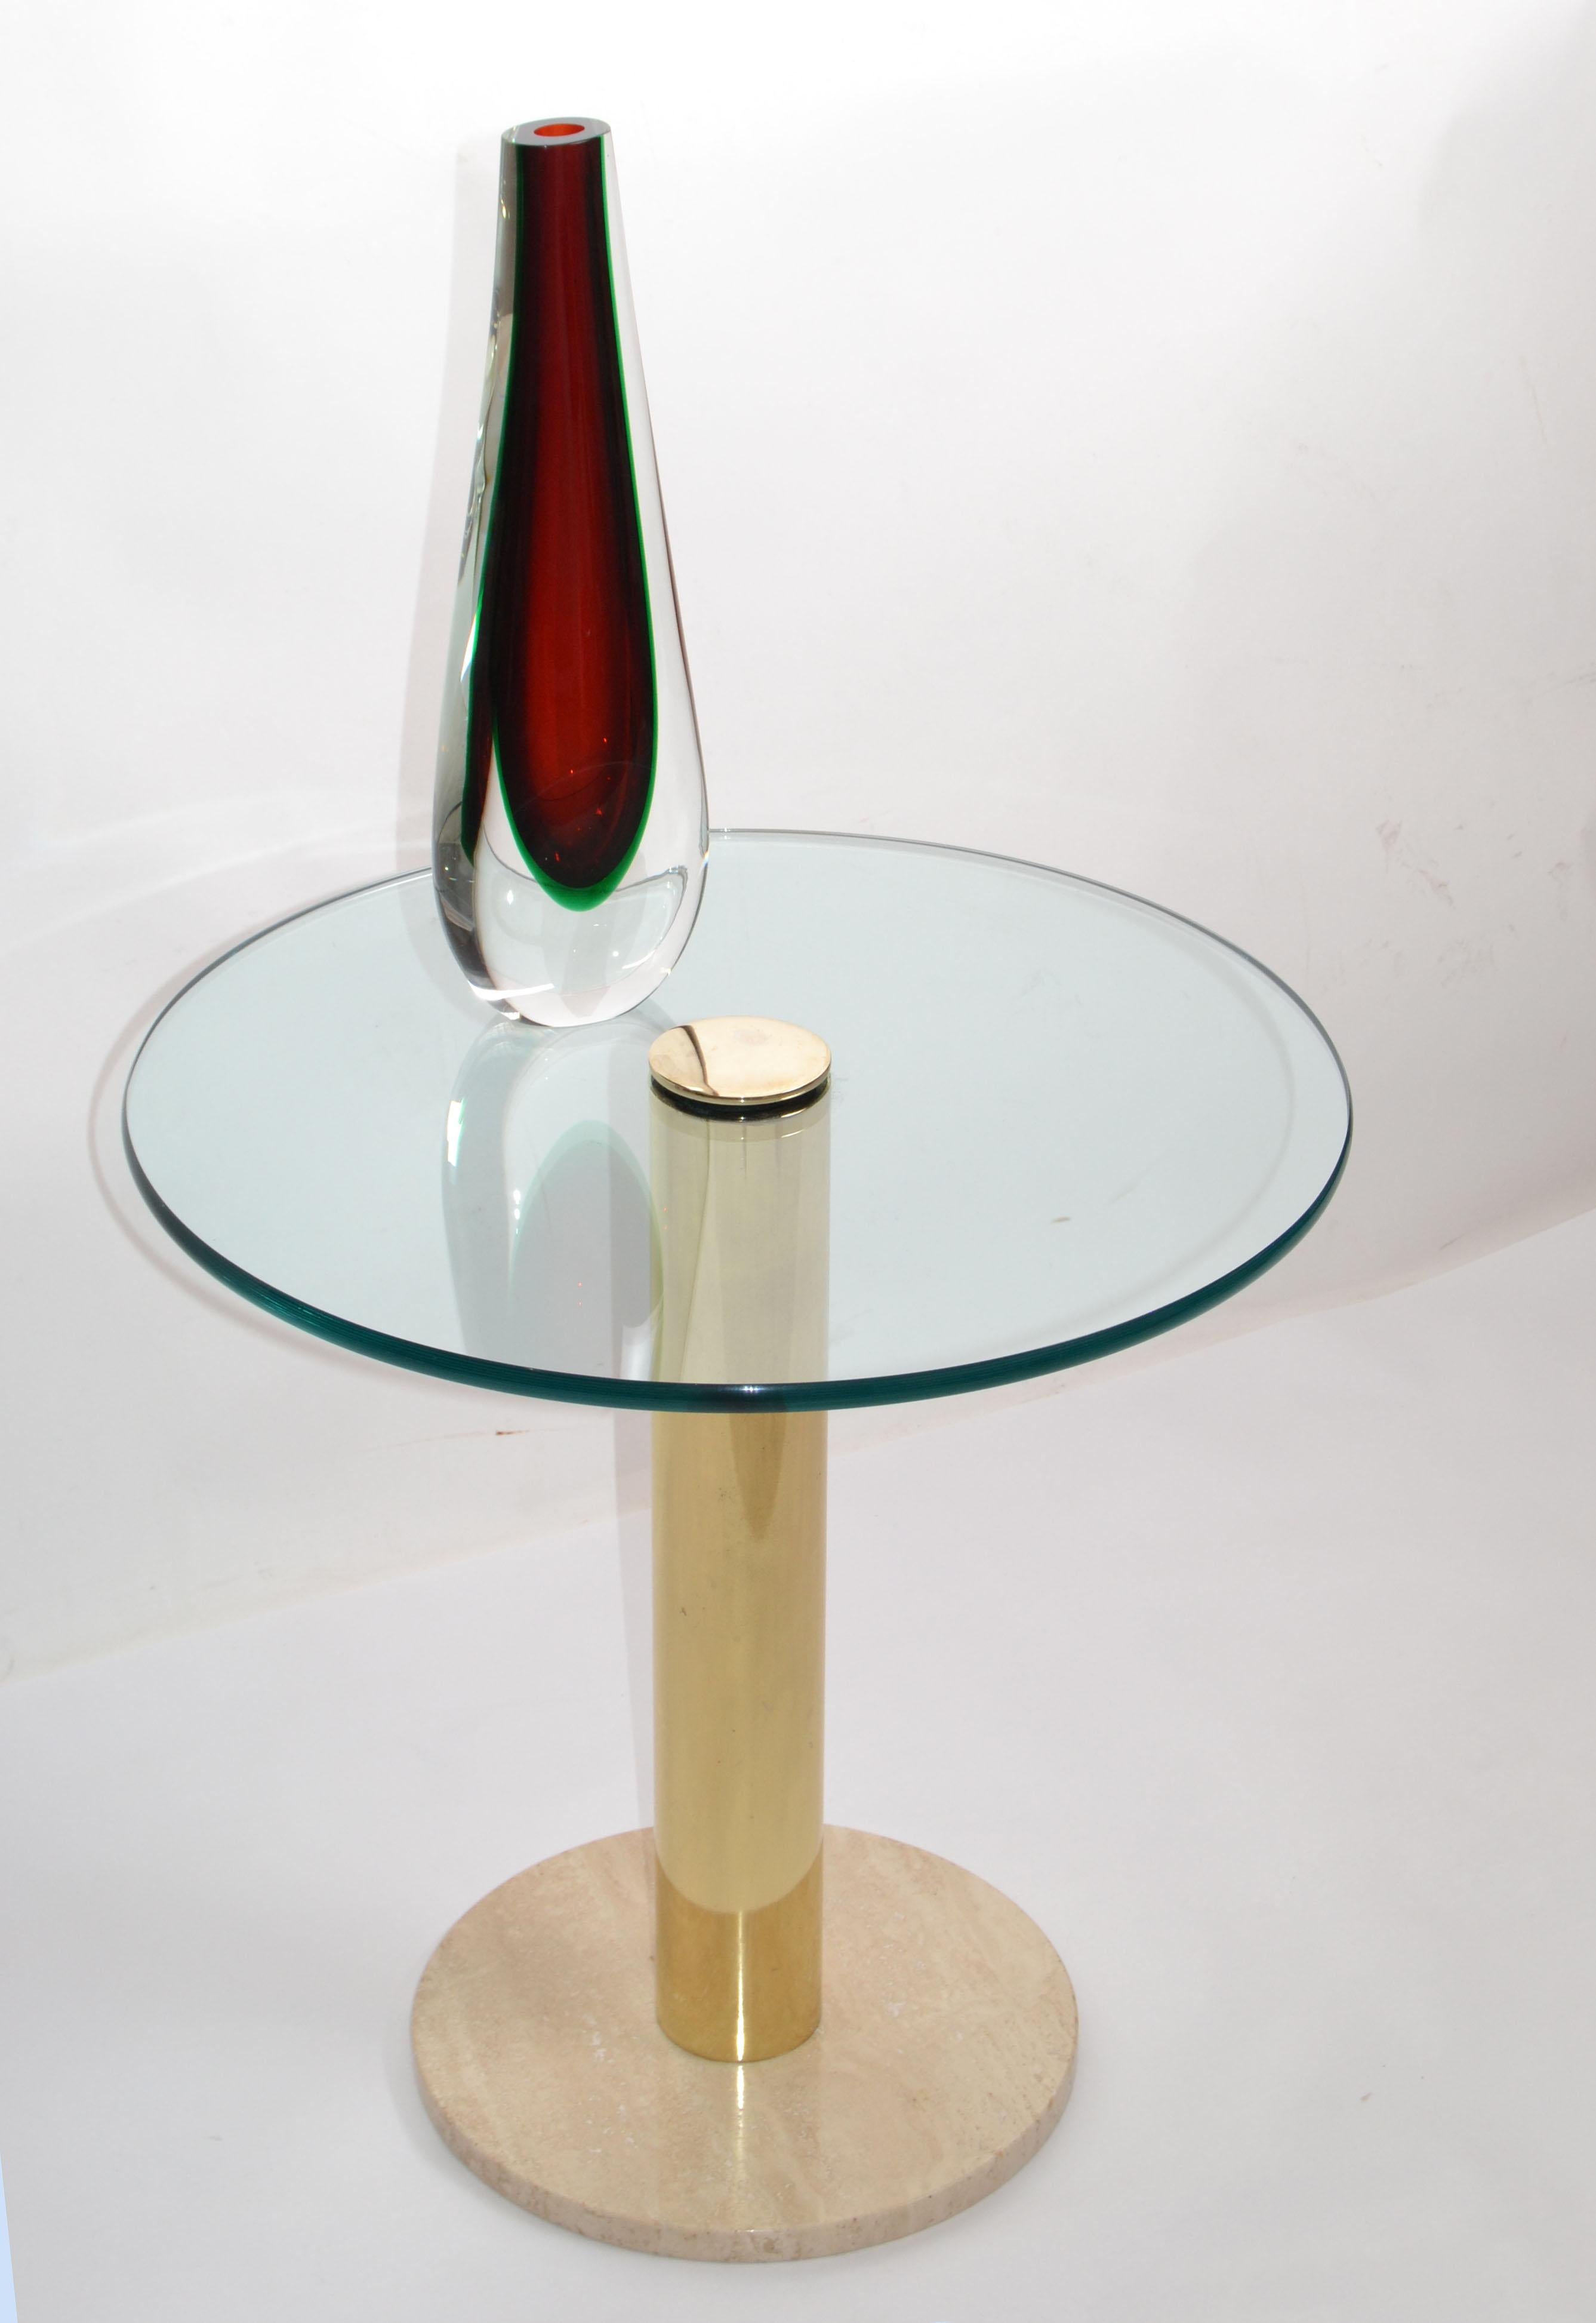 Vase Seguso original de Flavio Poli en verre de Murano, entouré de 3 couleurs différentes, rouge foncé, vert et transparent.
Fabriqué en Italie à la fin des années 1960.
Il est magnifique sous tous les angles.
Signature gravée à la base, Flavio